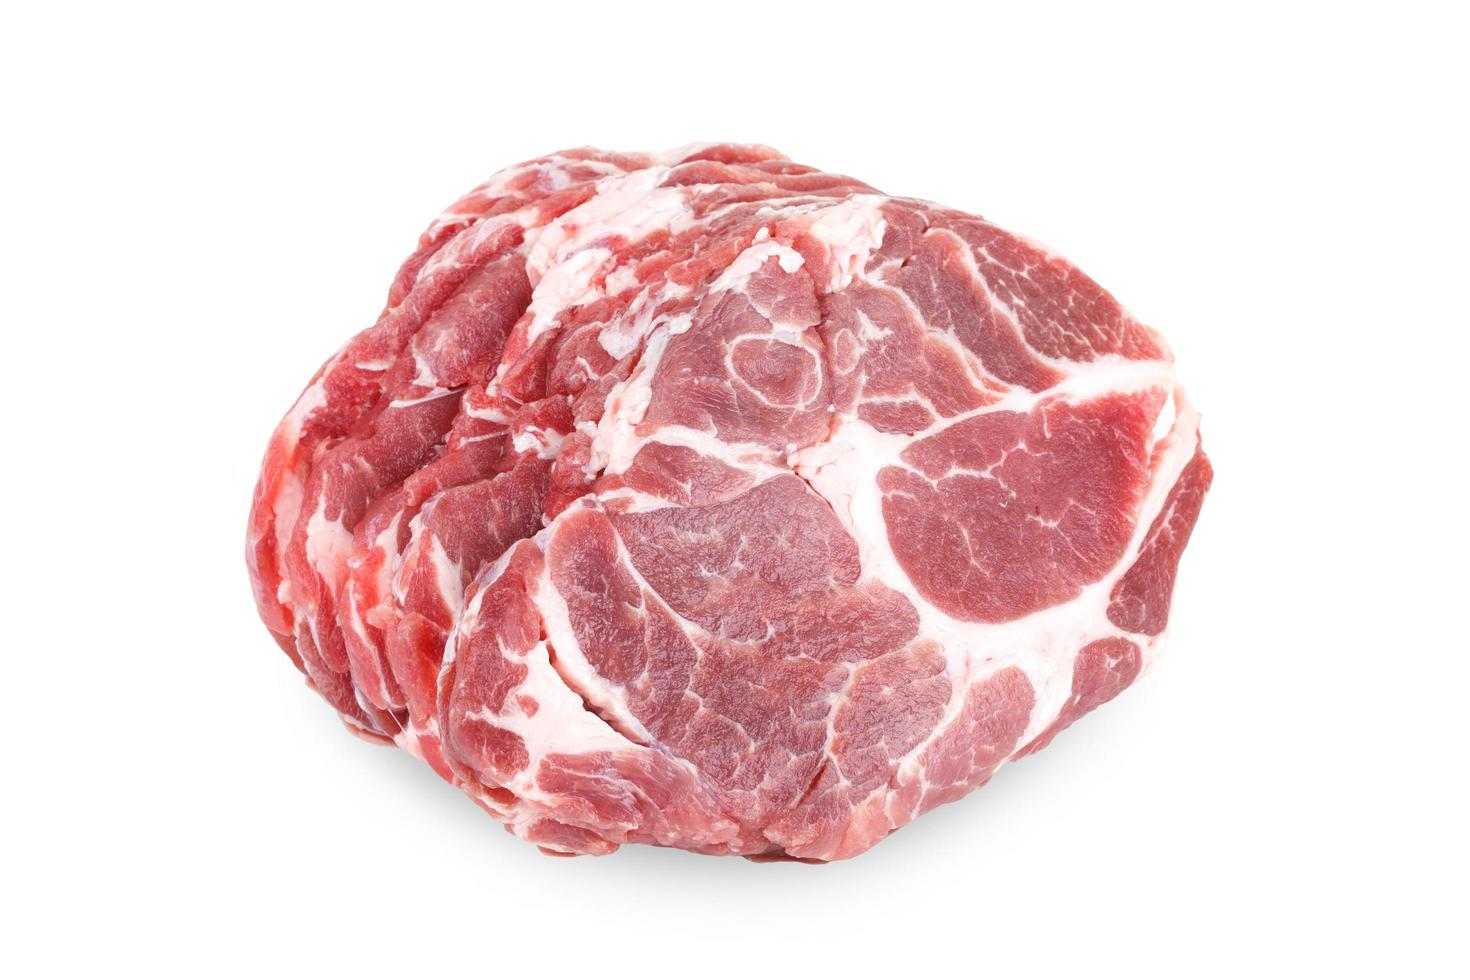 filete de carne de cuello de cerdo crudo fresco aislado sobre fondo blanco foto